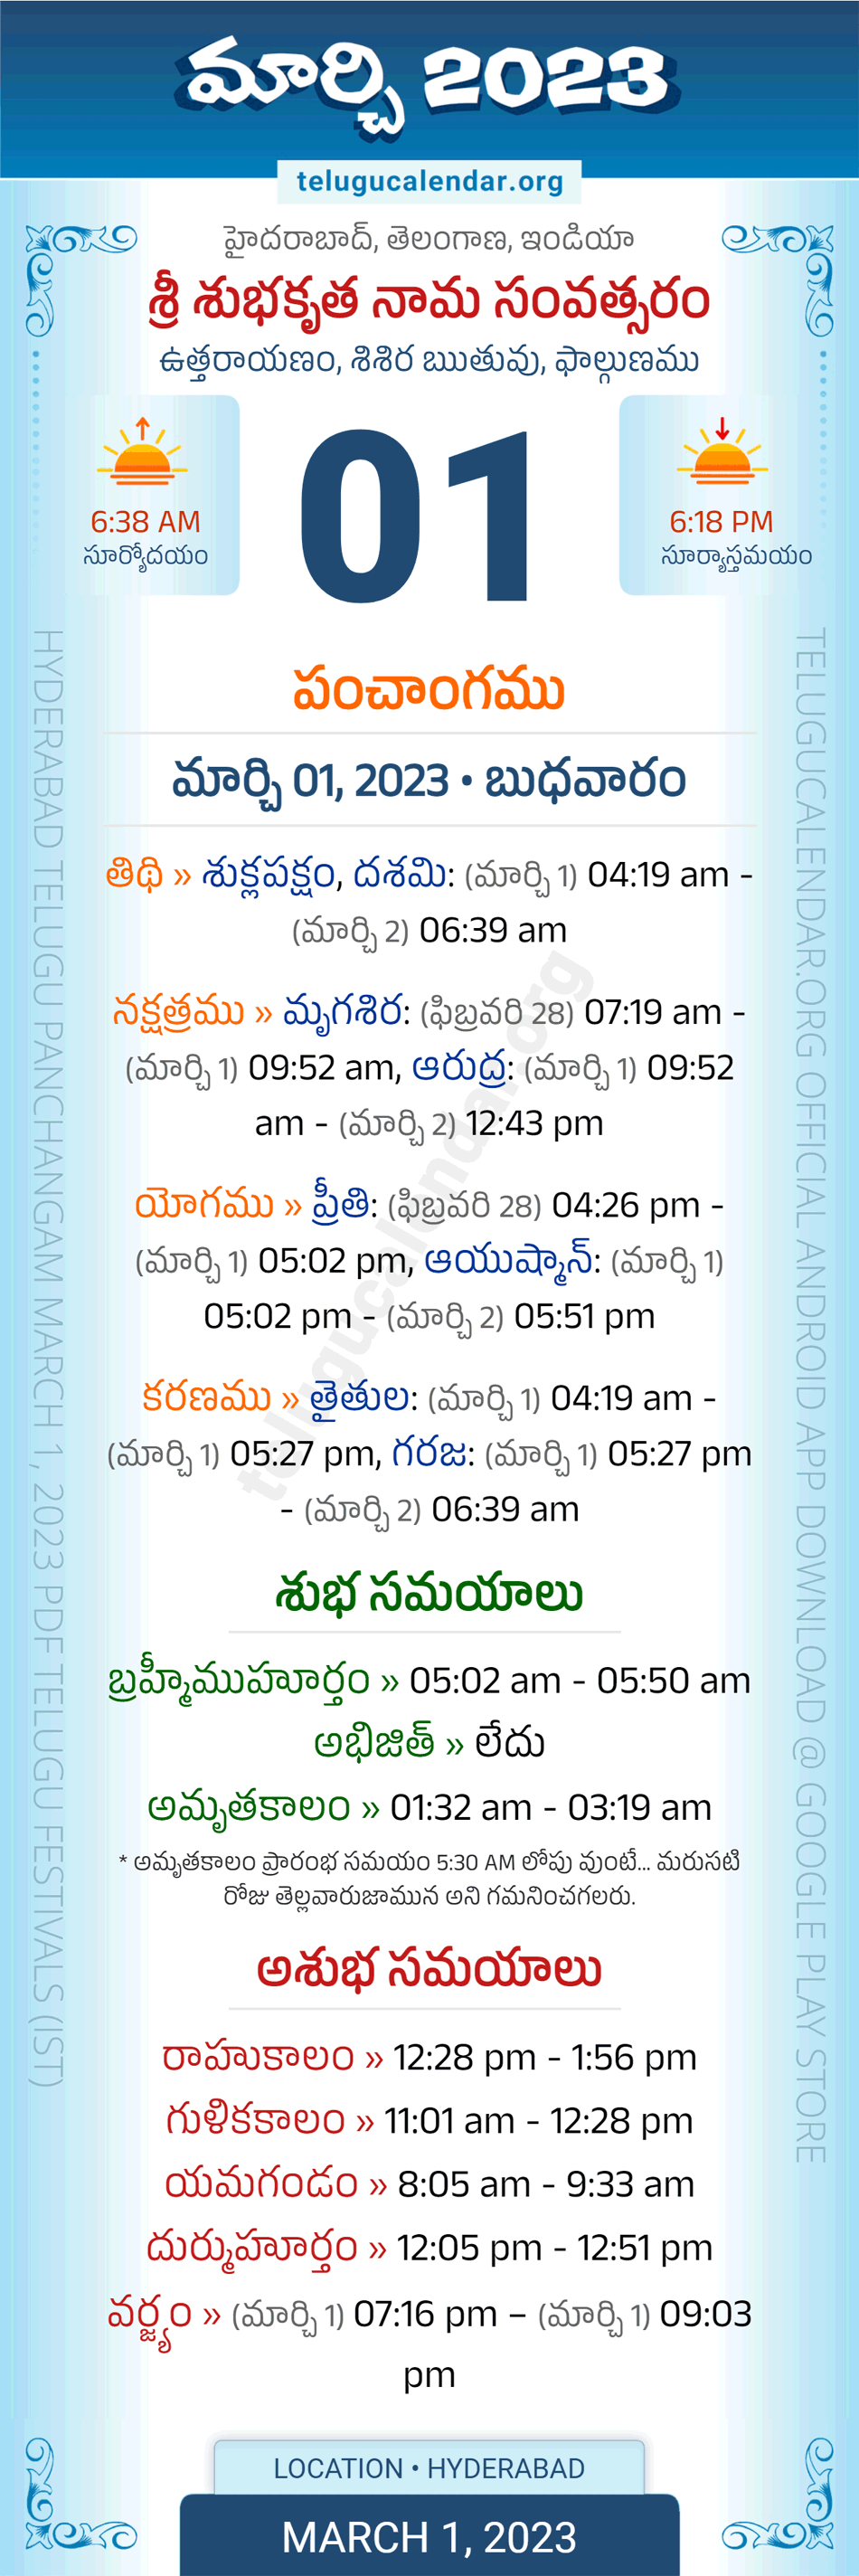 2023 Telugu Calendar